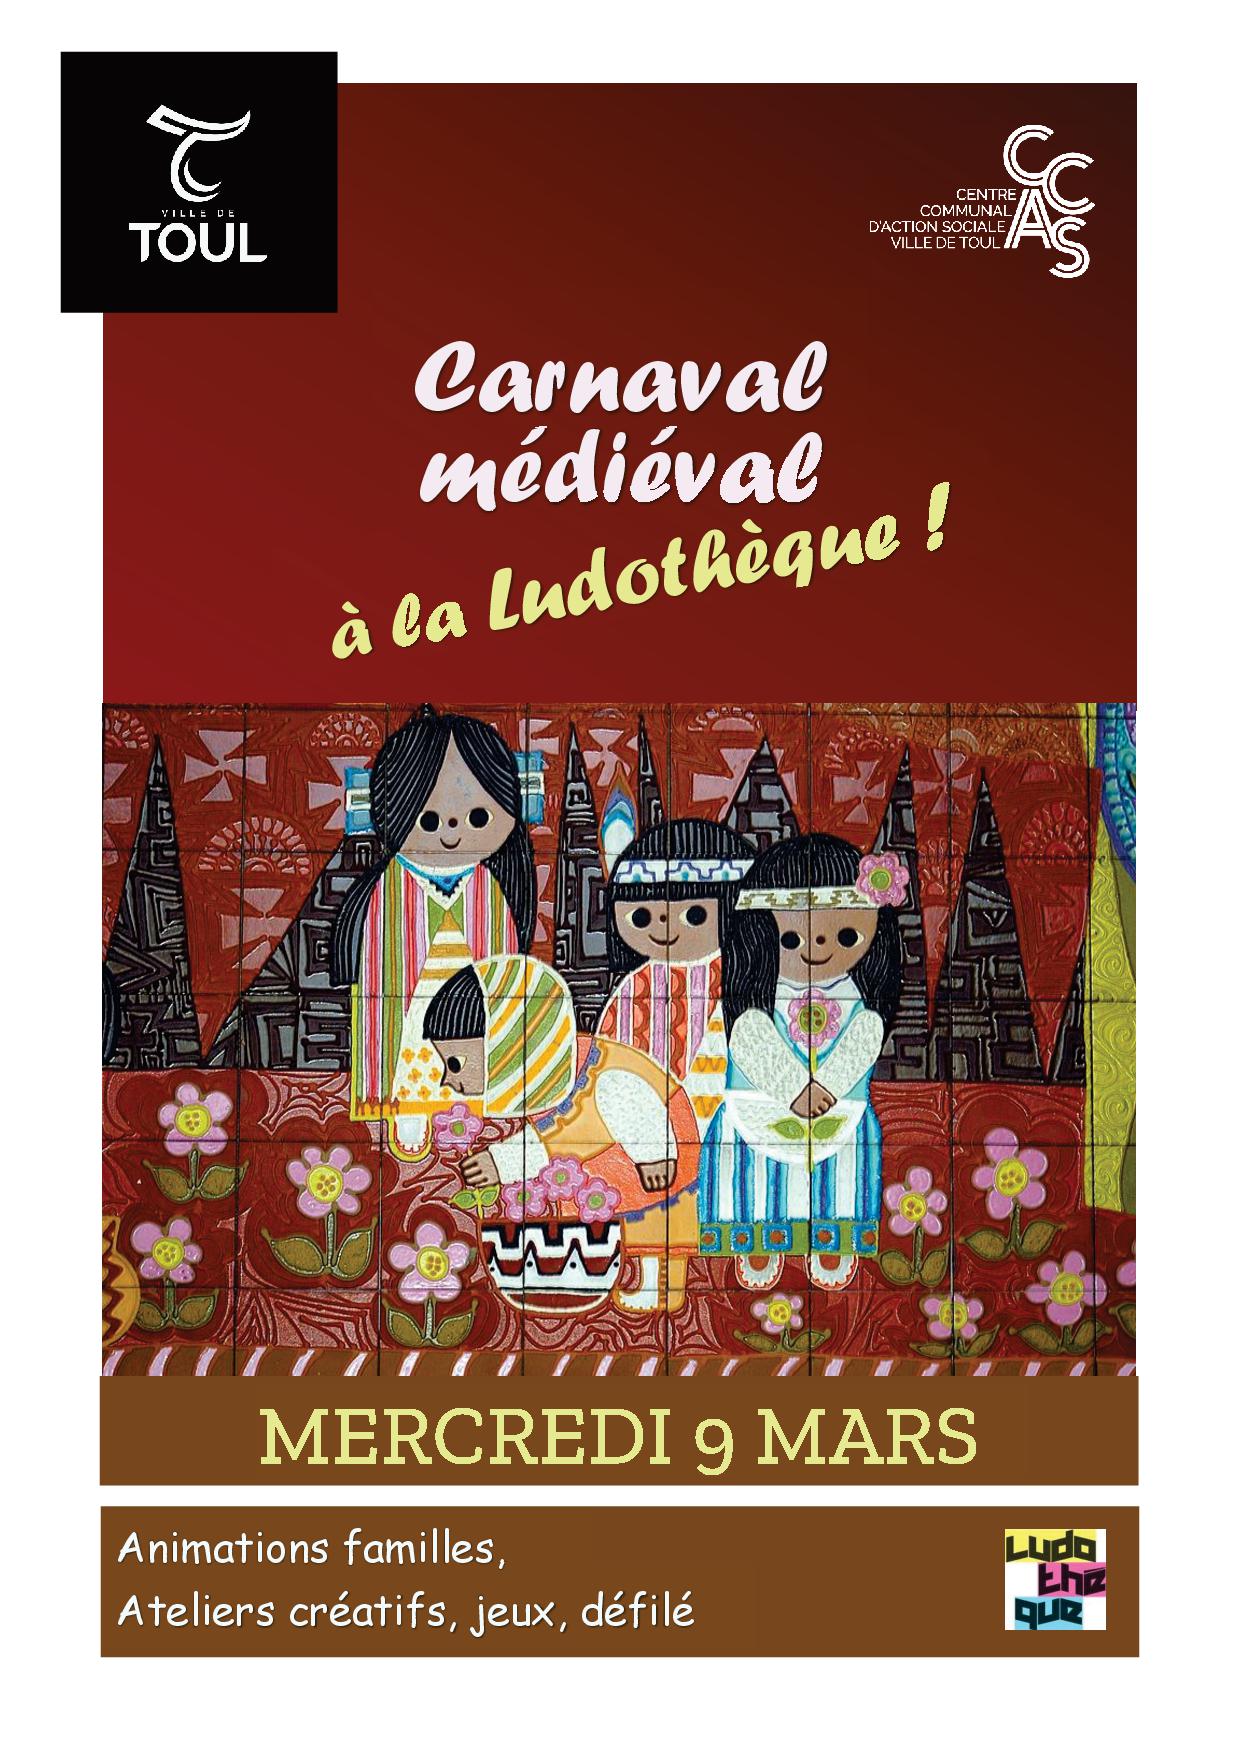 carnaval medieval ludotheque mercredi image médiévale avec enfants fleurs tapisserie 